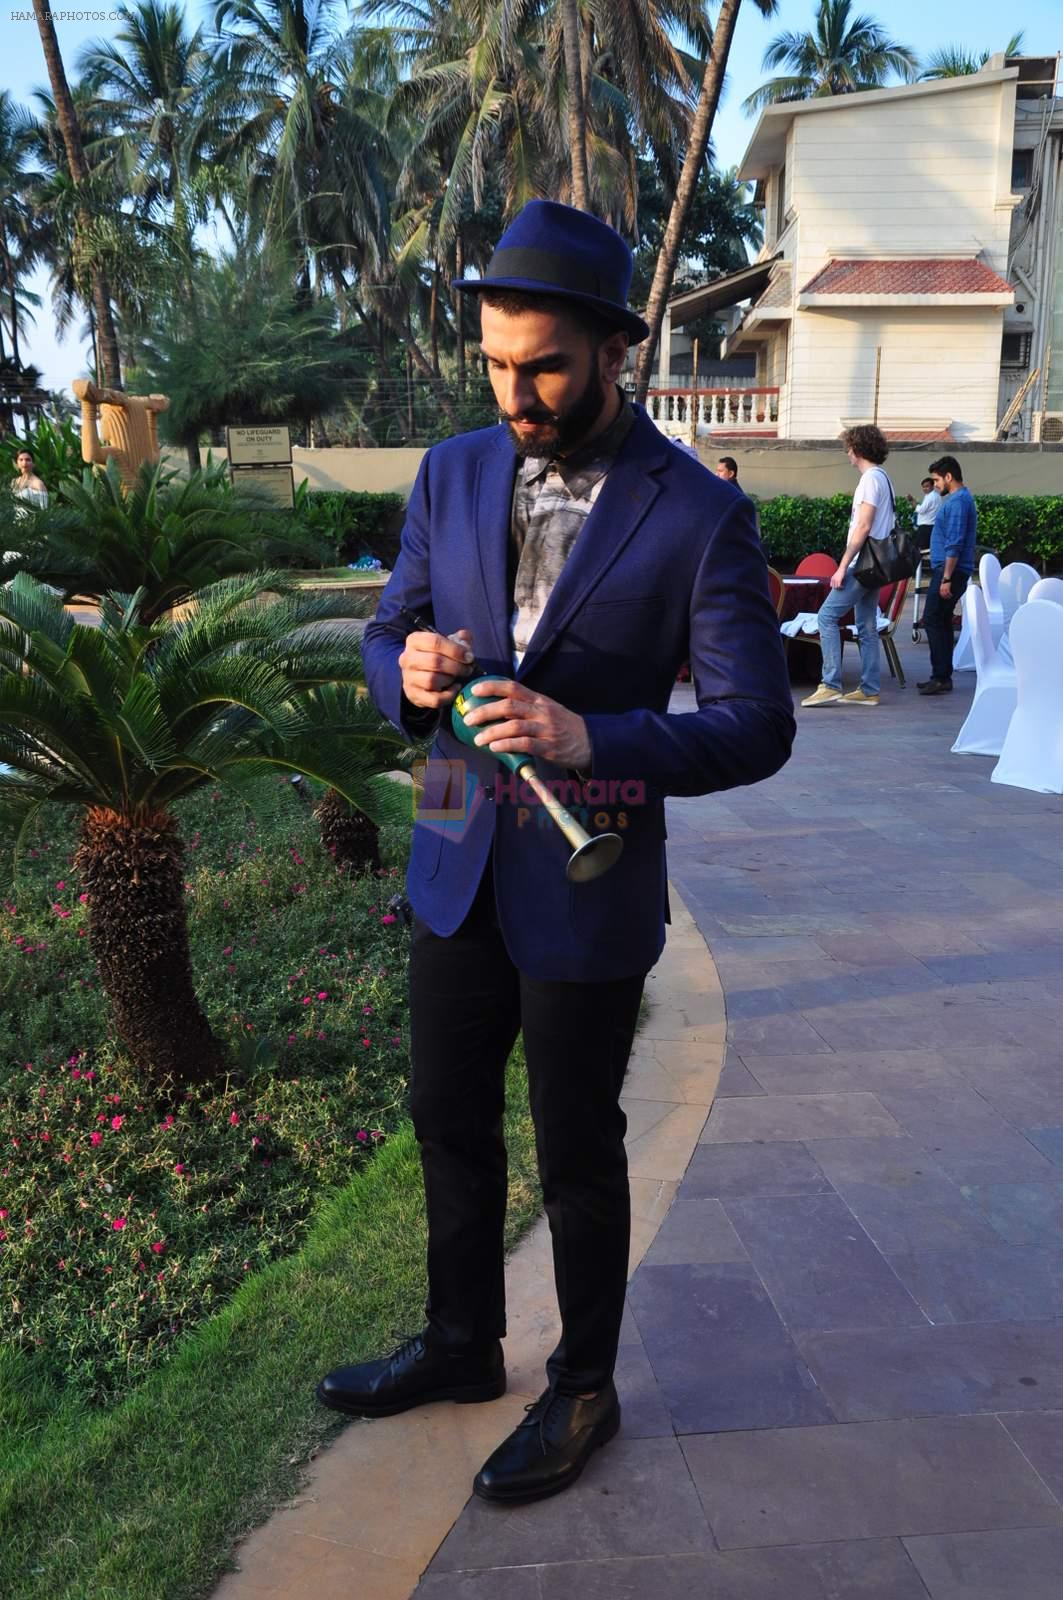 Ranveer Singh photo shoot on 8th Dec 2015